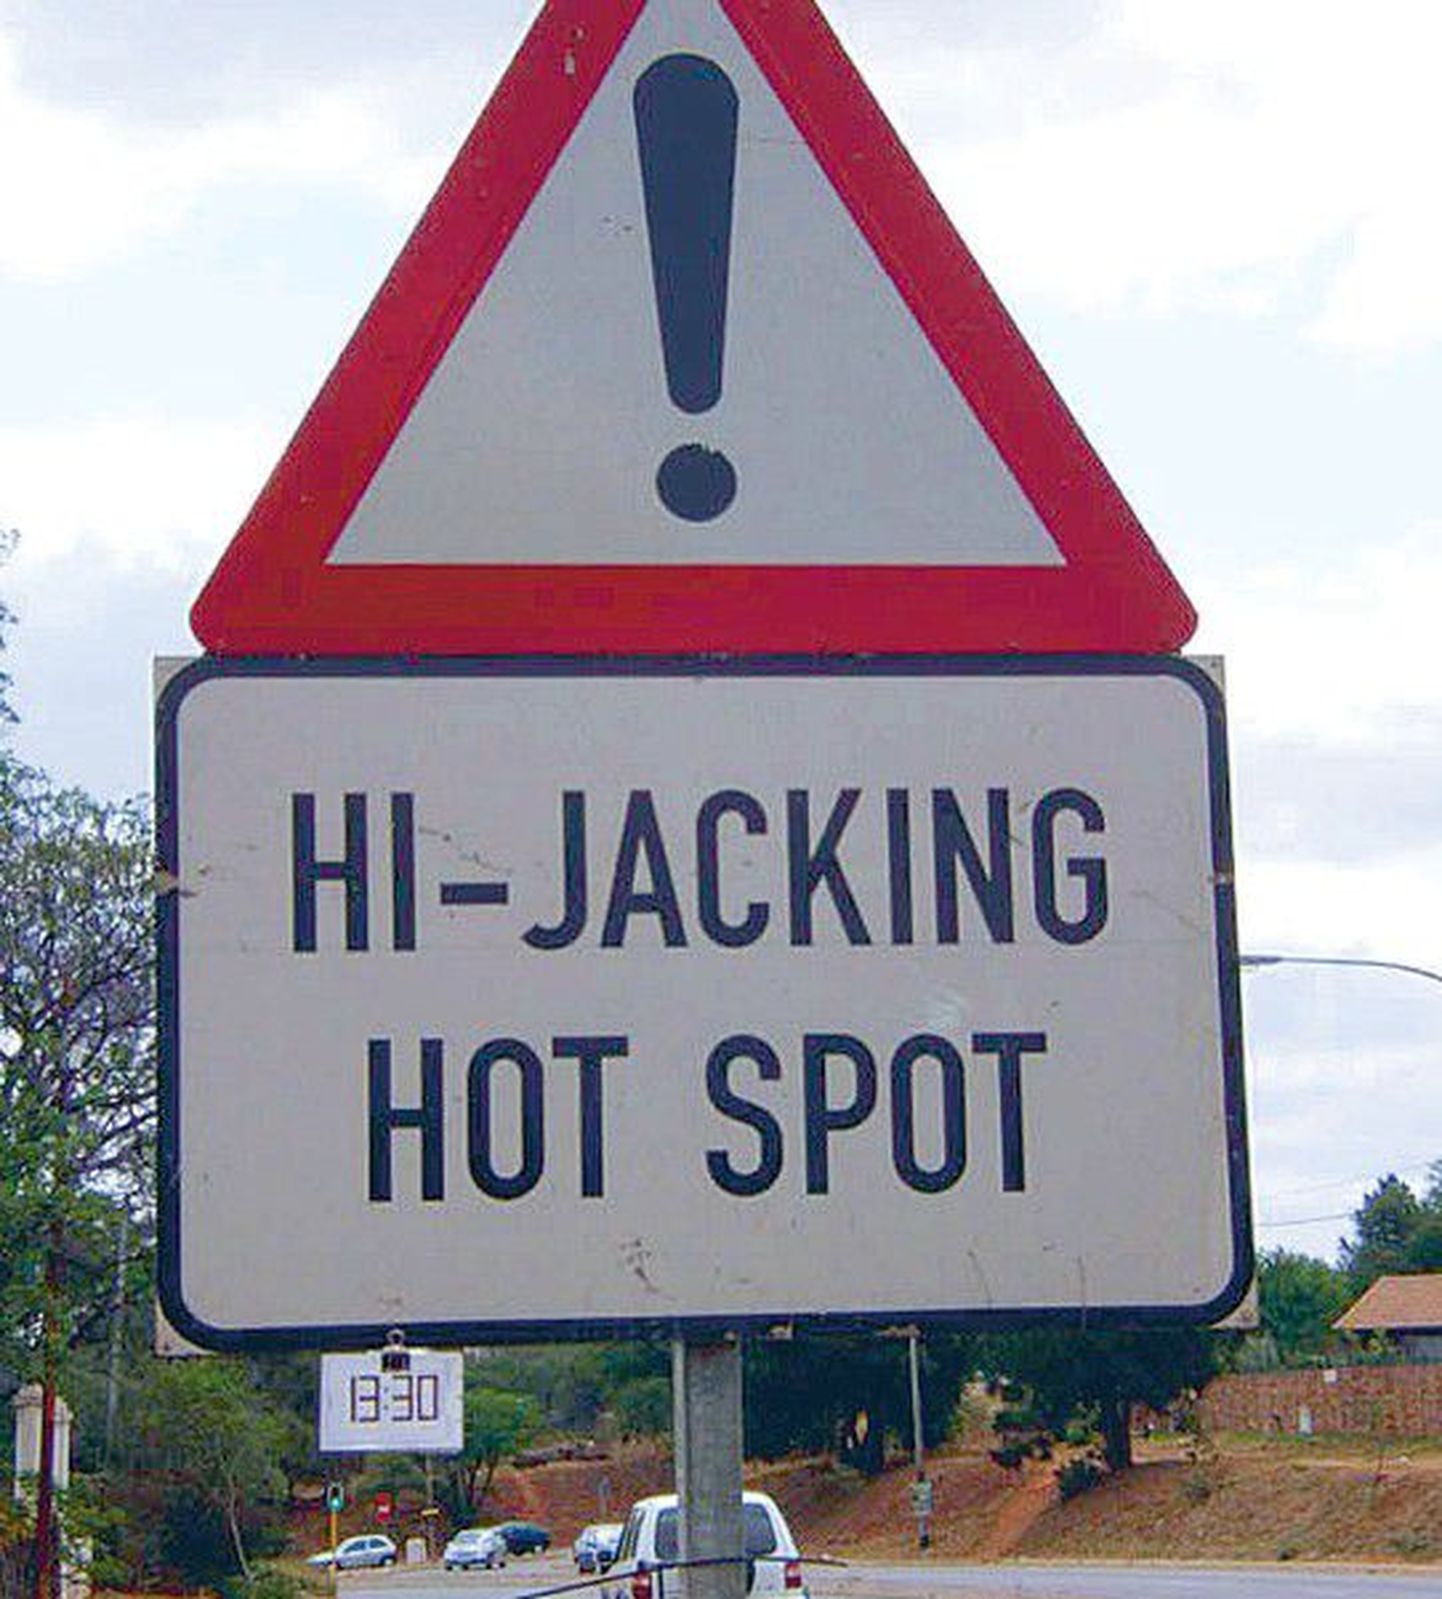 Lõuna-Aafrika Vabariigis on autokaaperdamised nõnda tavalised, et teatud tsoonidesse jõudes on hoiatuseks välja pandud vastavad liiklusmärgid.